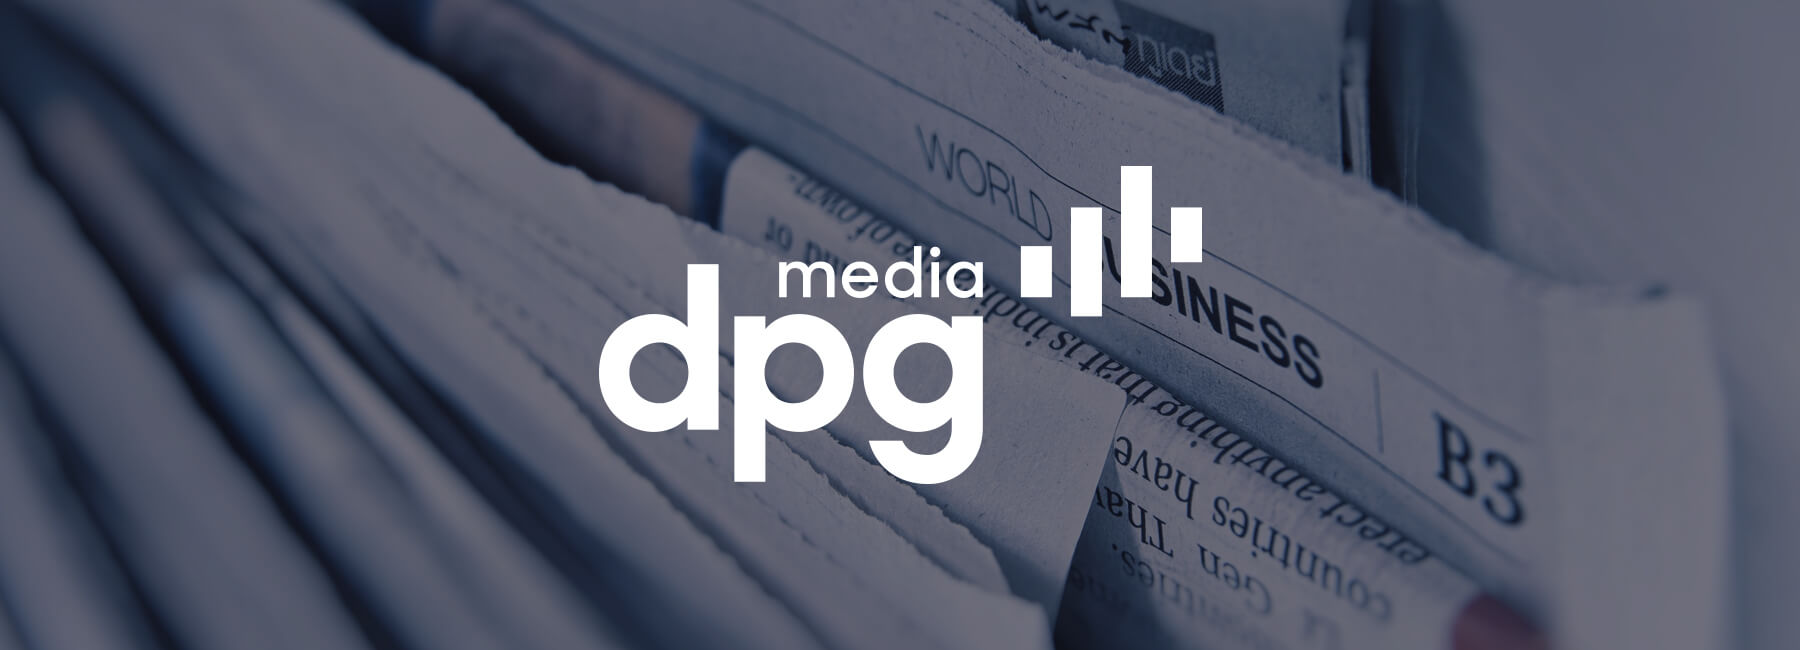 DPG Media führt die Mopinion für alle Online-Nachrichtenmarken ein